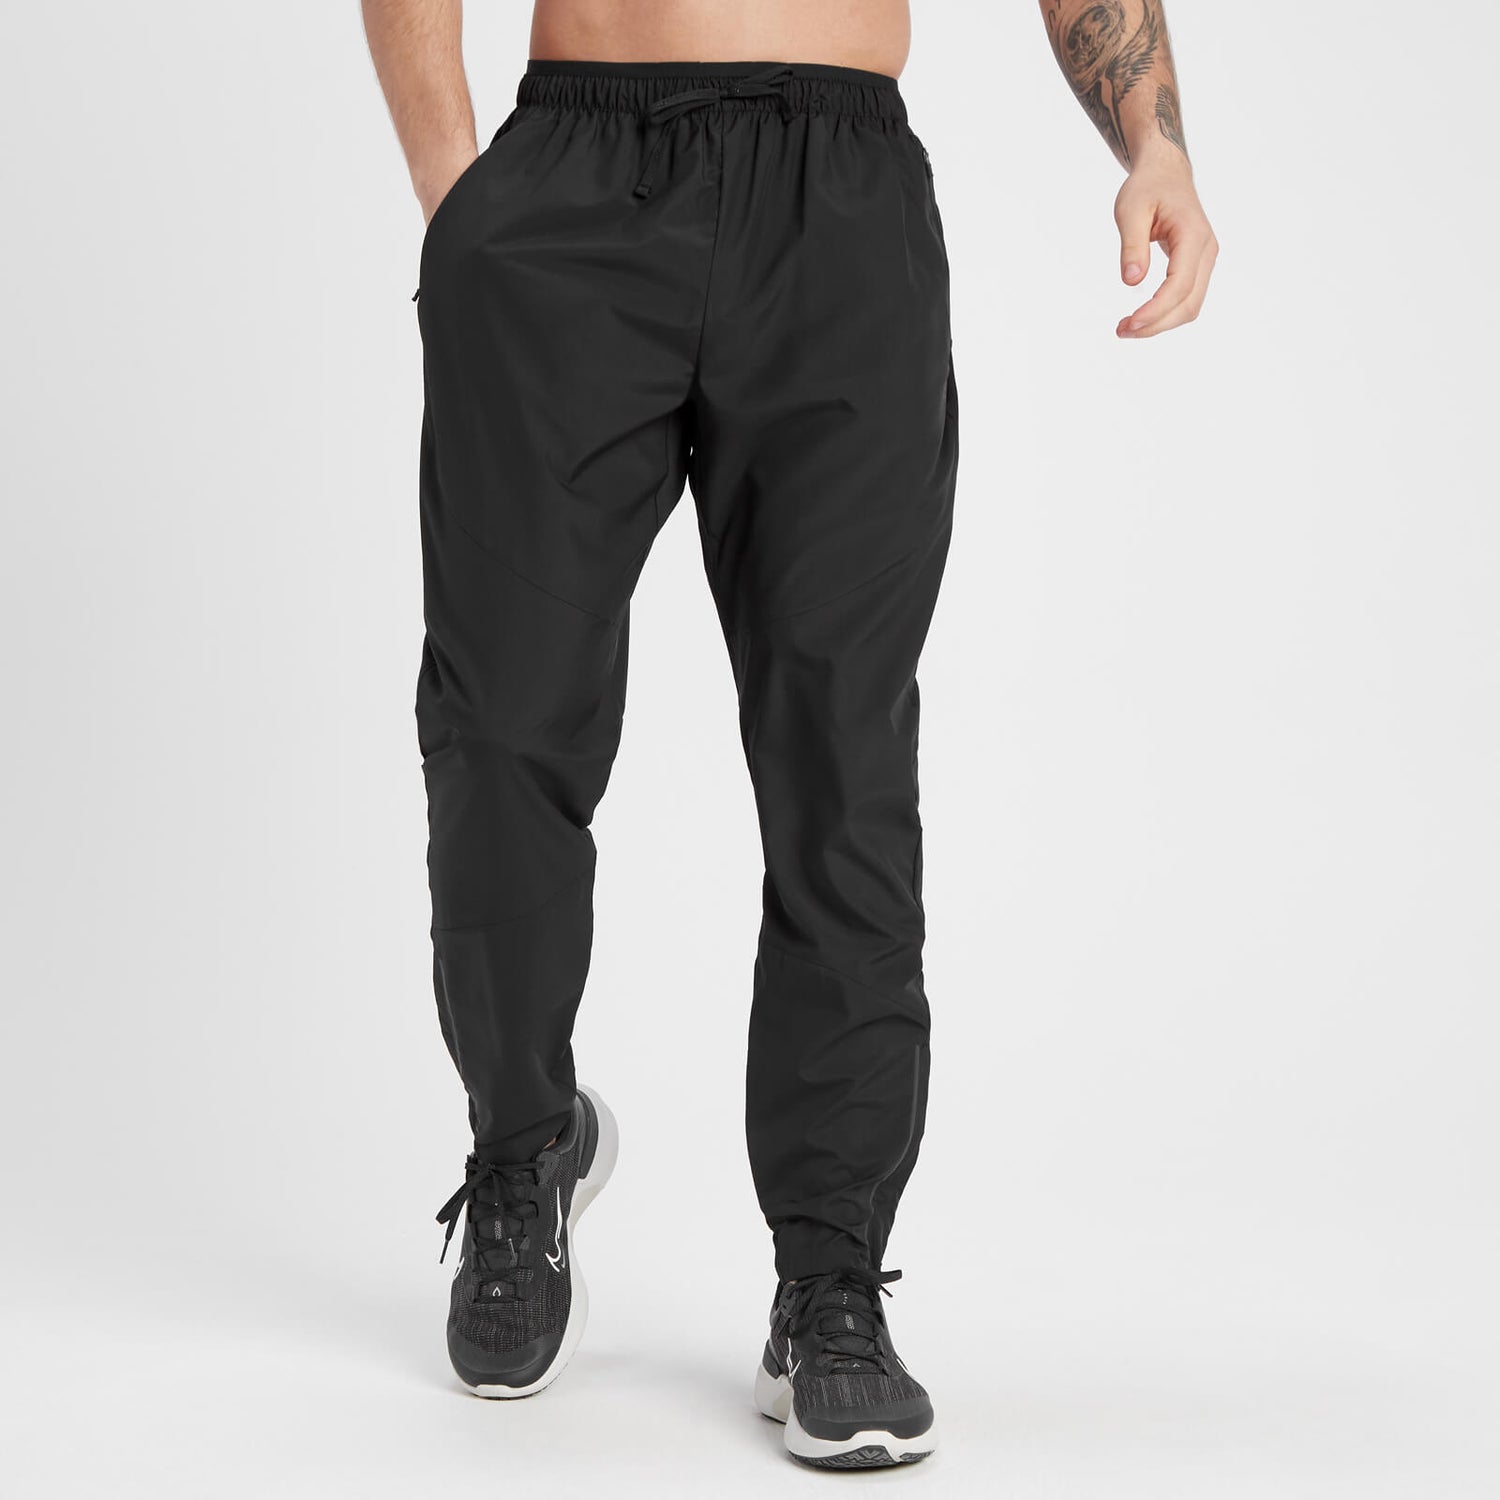 Pantalón deportivo Velocity Ultra para hombre de MP - Negro - XS